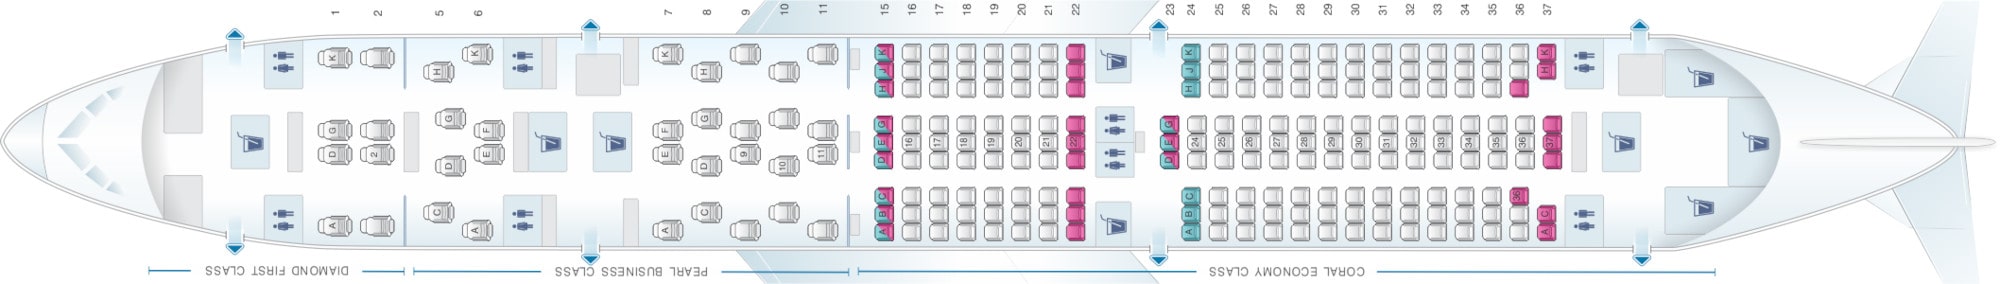 Boeing 787 Etihad Seating Plan